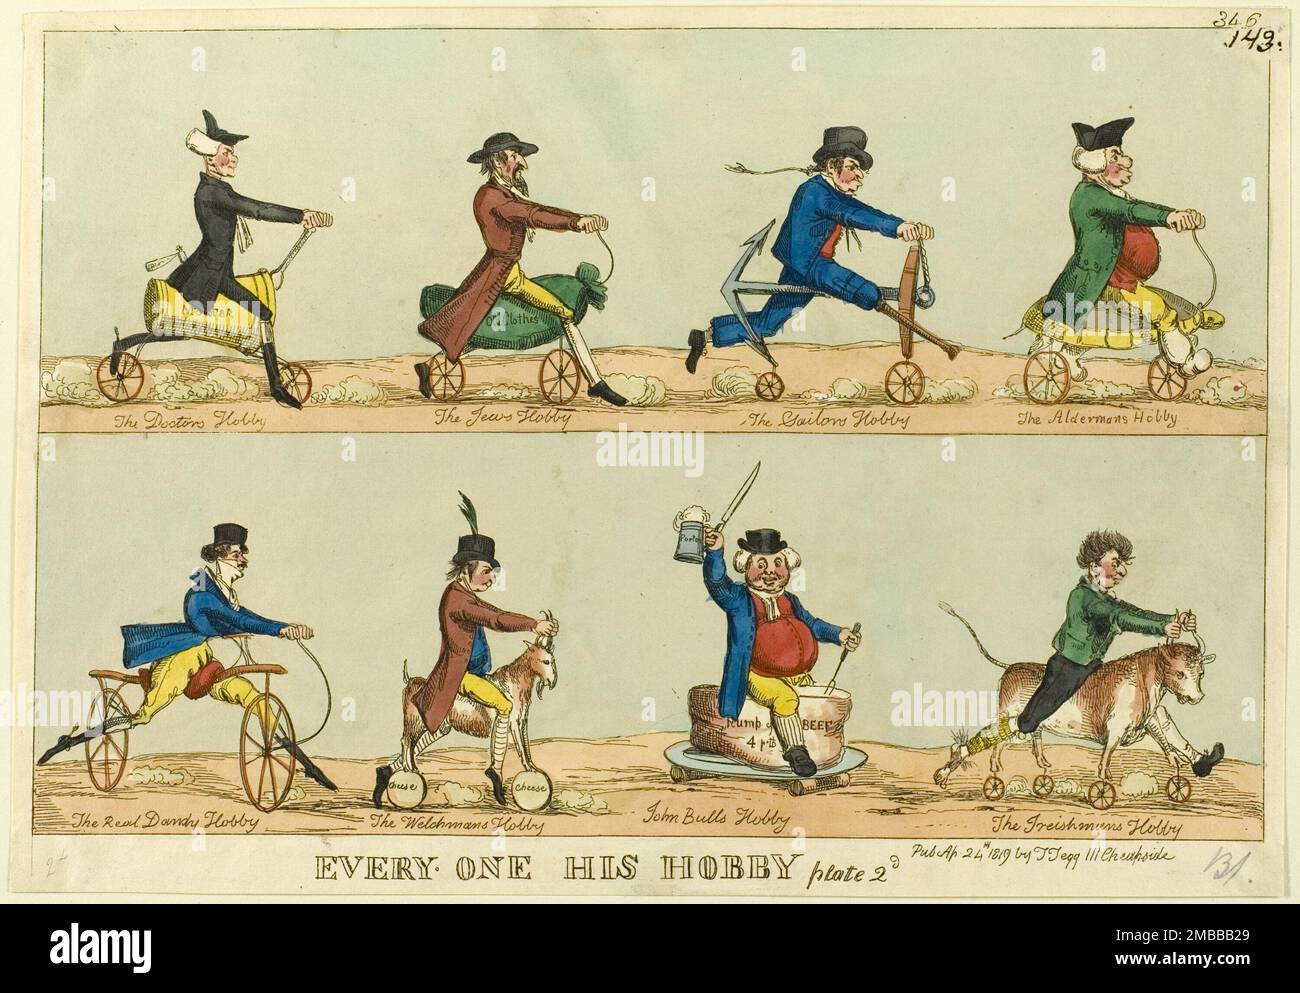 Everyone Hobby, Plate 2, pubblicato il 24 aprile 1819. Caricature di uomini che guidano cavalli hobby (un precursore della bicicletta) progettate per riflettere la loro professione: 'Il Hobby del medico [un mortaio e pestello], il Hobby del Giudeo [un sacchetto di vecchi vestiti], il Hobby del Sailor [un'ancora], il Hobby dell'Alderman [una tartaruga, riferimento alla zuppa di tartarughe?], Il Real Dandy Hobby [un cavallo dandy, cavalcato da un maccherone in alto colletto], il Welchman's Hobby [una capra, con formaggi per ruote], John Bull's Hobby [un grumo di manzo], il Irishman's Hobby' [un toro]. Attribuito a William Heath. Foto Stock